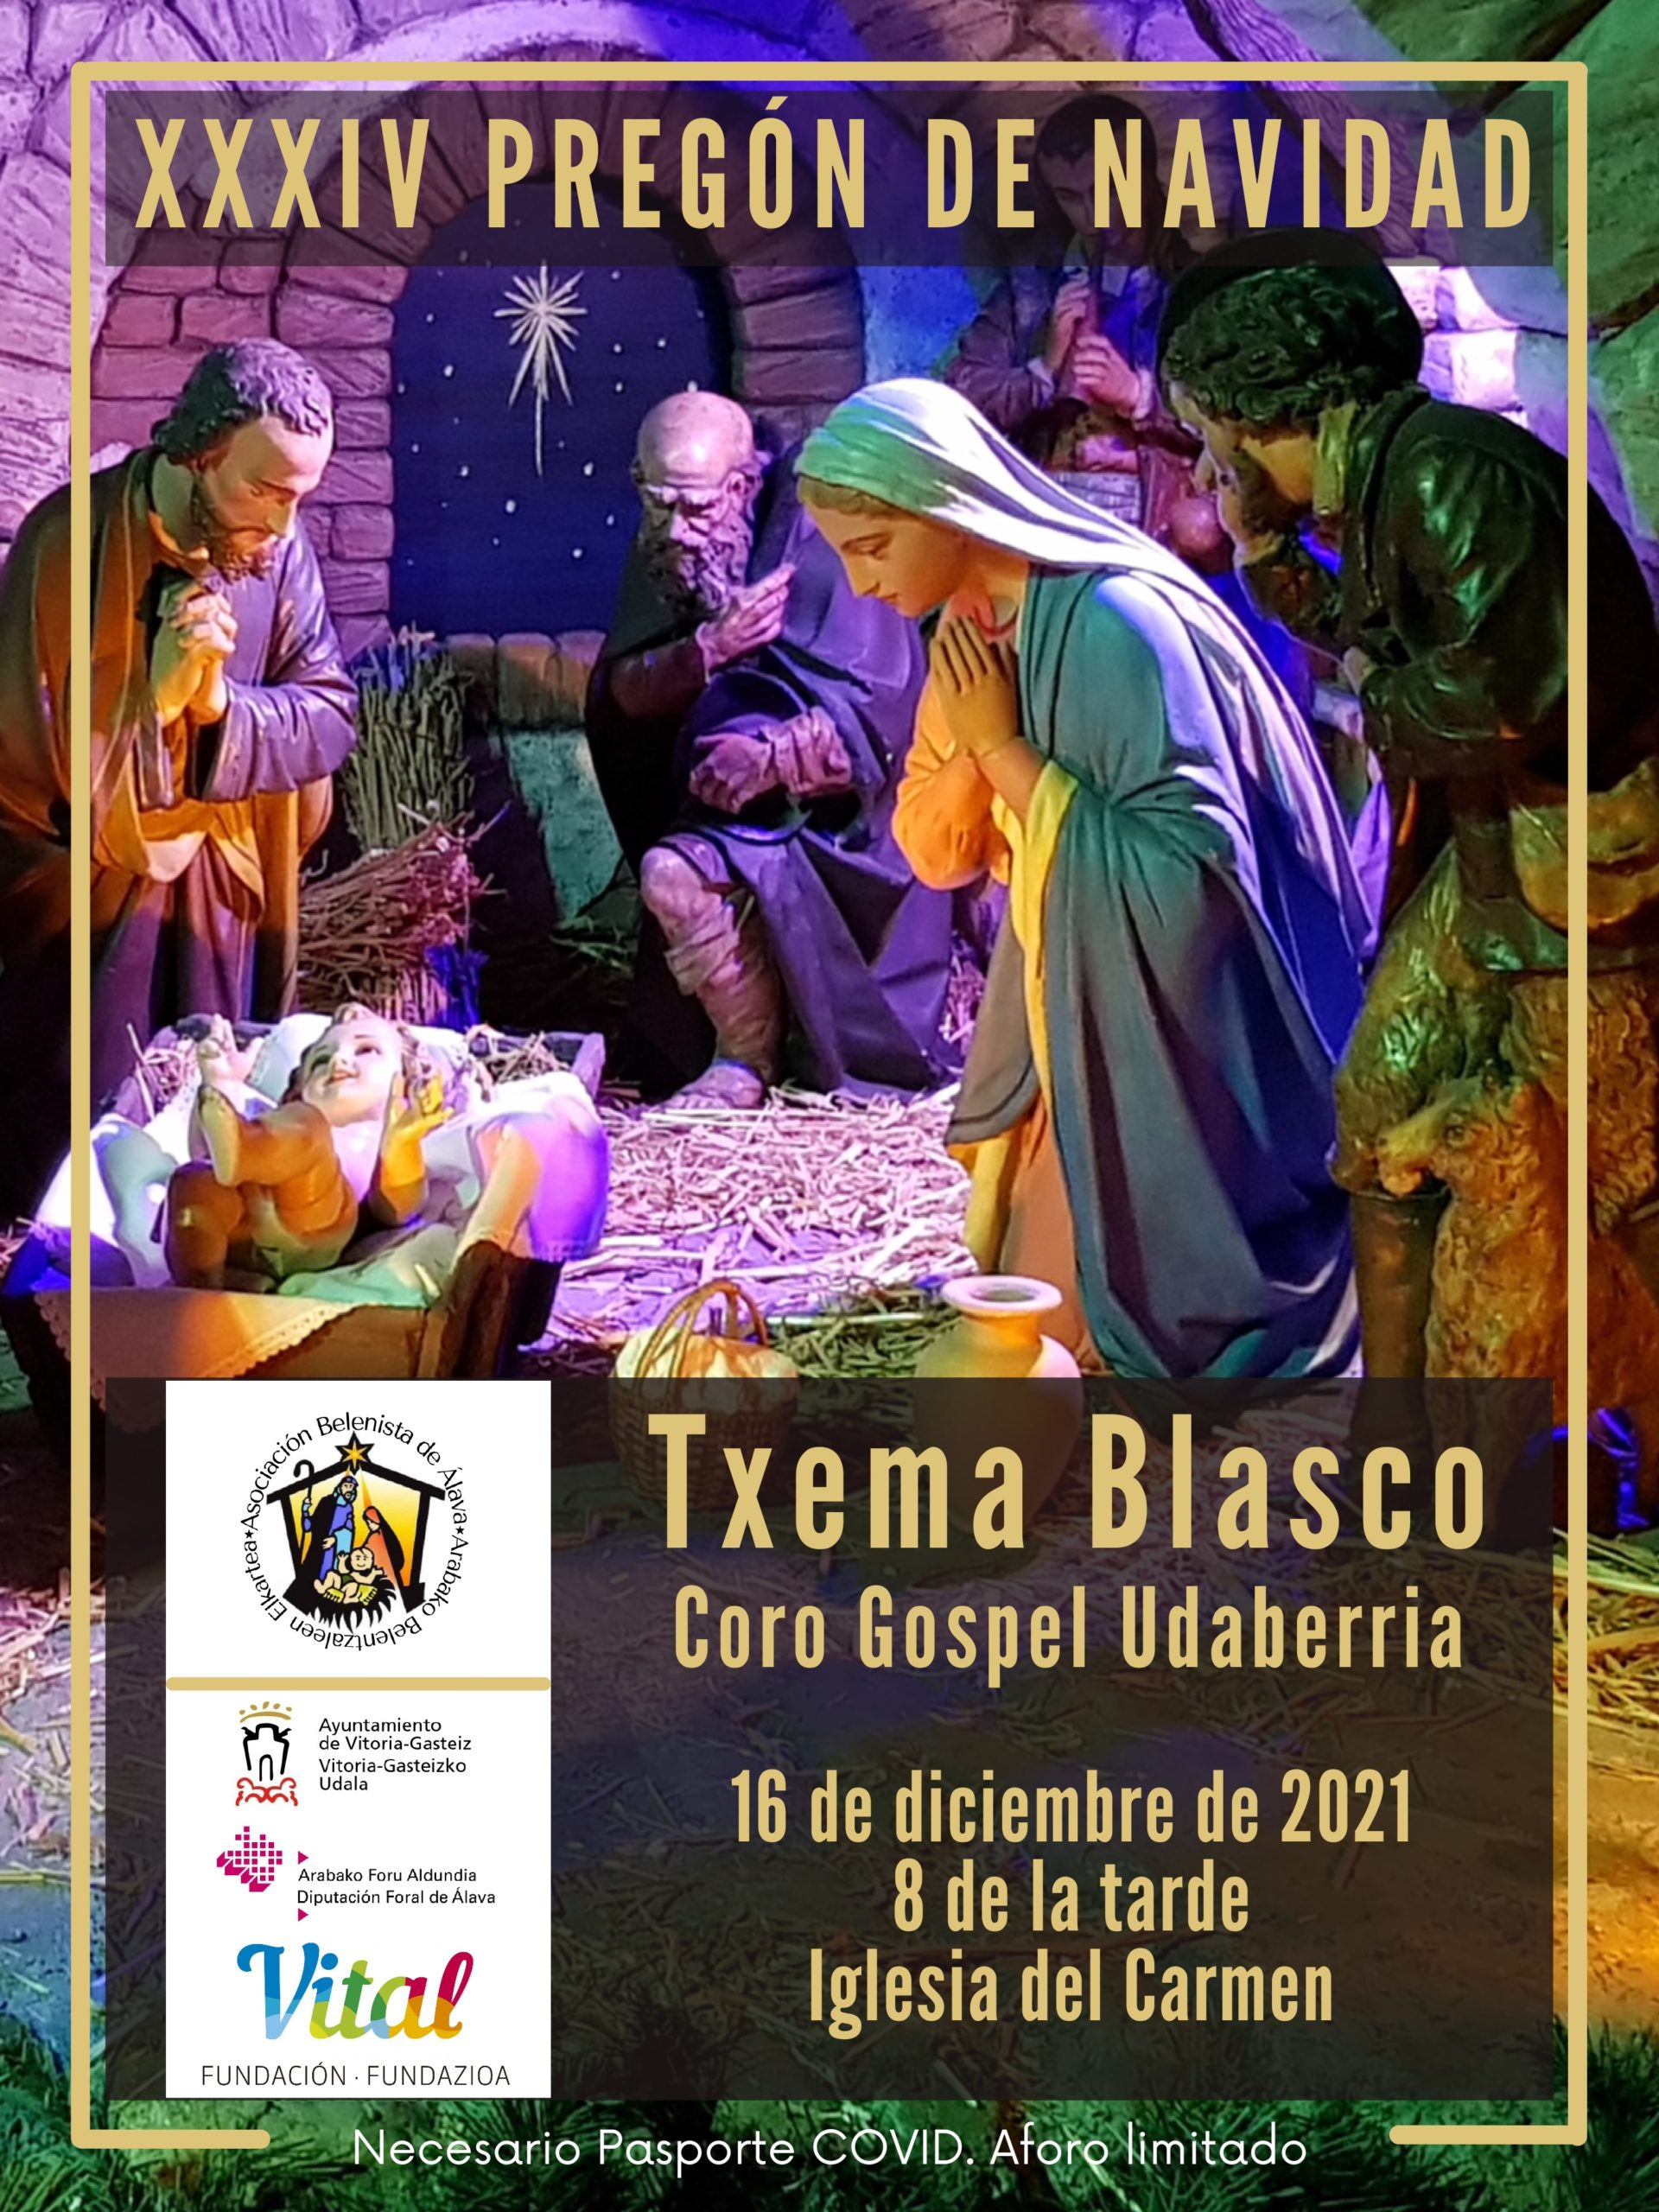 Cartel del XXXIV Pregón de Navidad, organizado por la Asociación Belenista de Álava y pronunciado por D. Txema Blasco Etxeguren el 16 de diciembre de 2021 en la Iglesia de los PP. Carmelitas Descalzos de Vitoria-Gasteiz